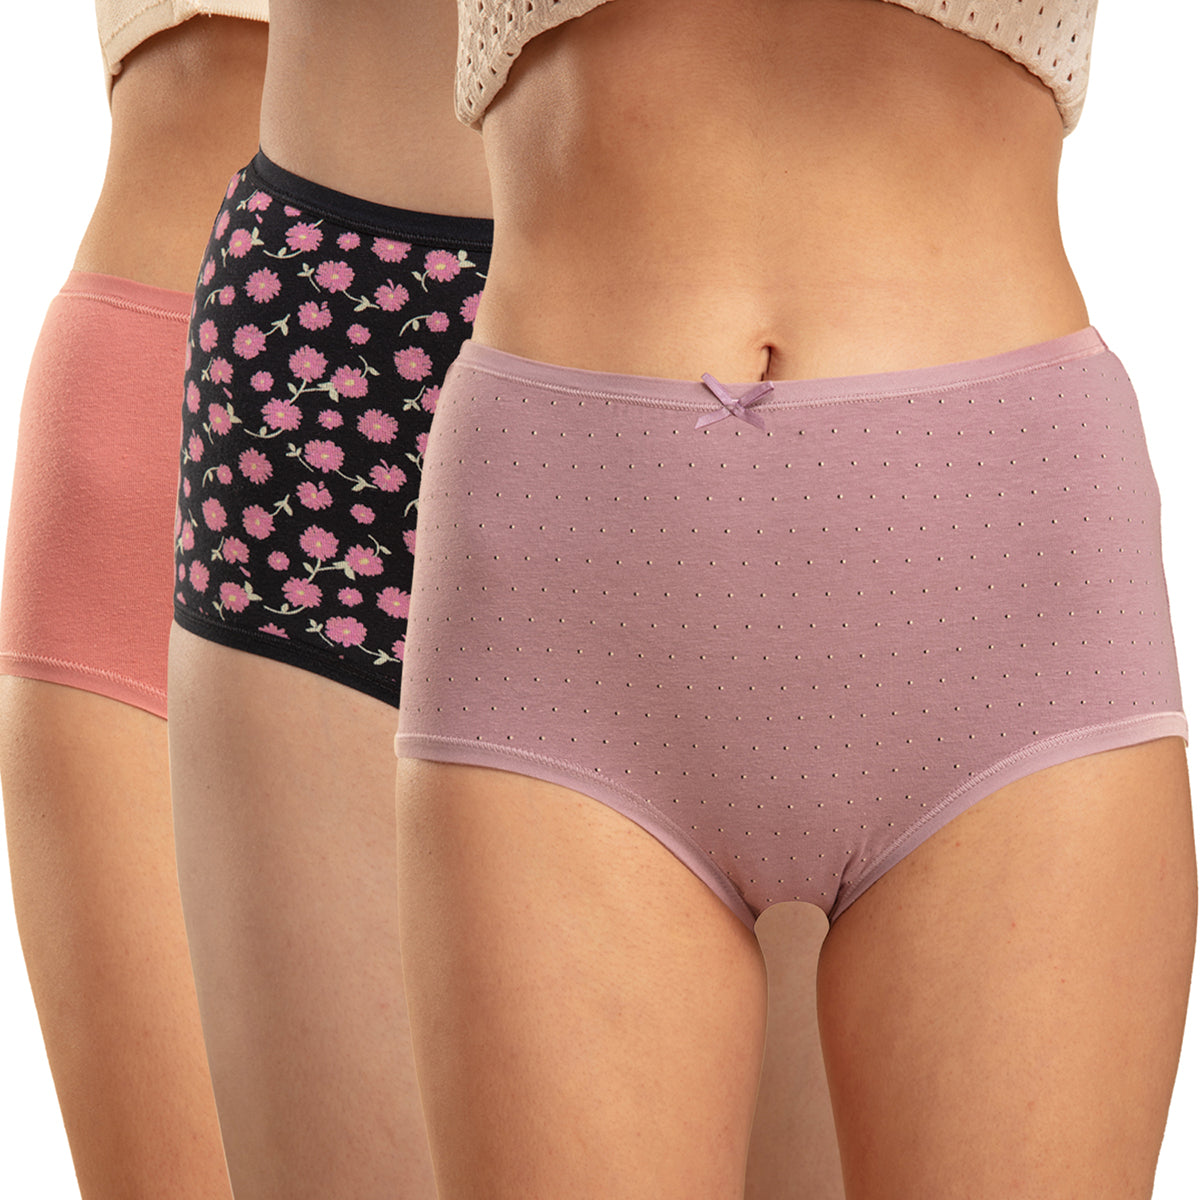 Women's High Waist Cotton Briefs Stretchy Knickers Underwear Full